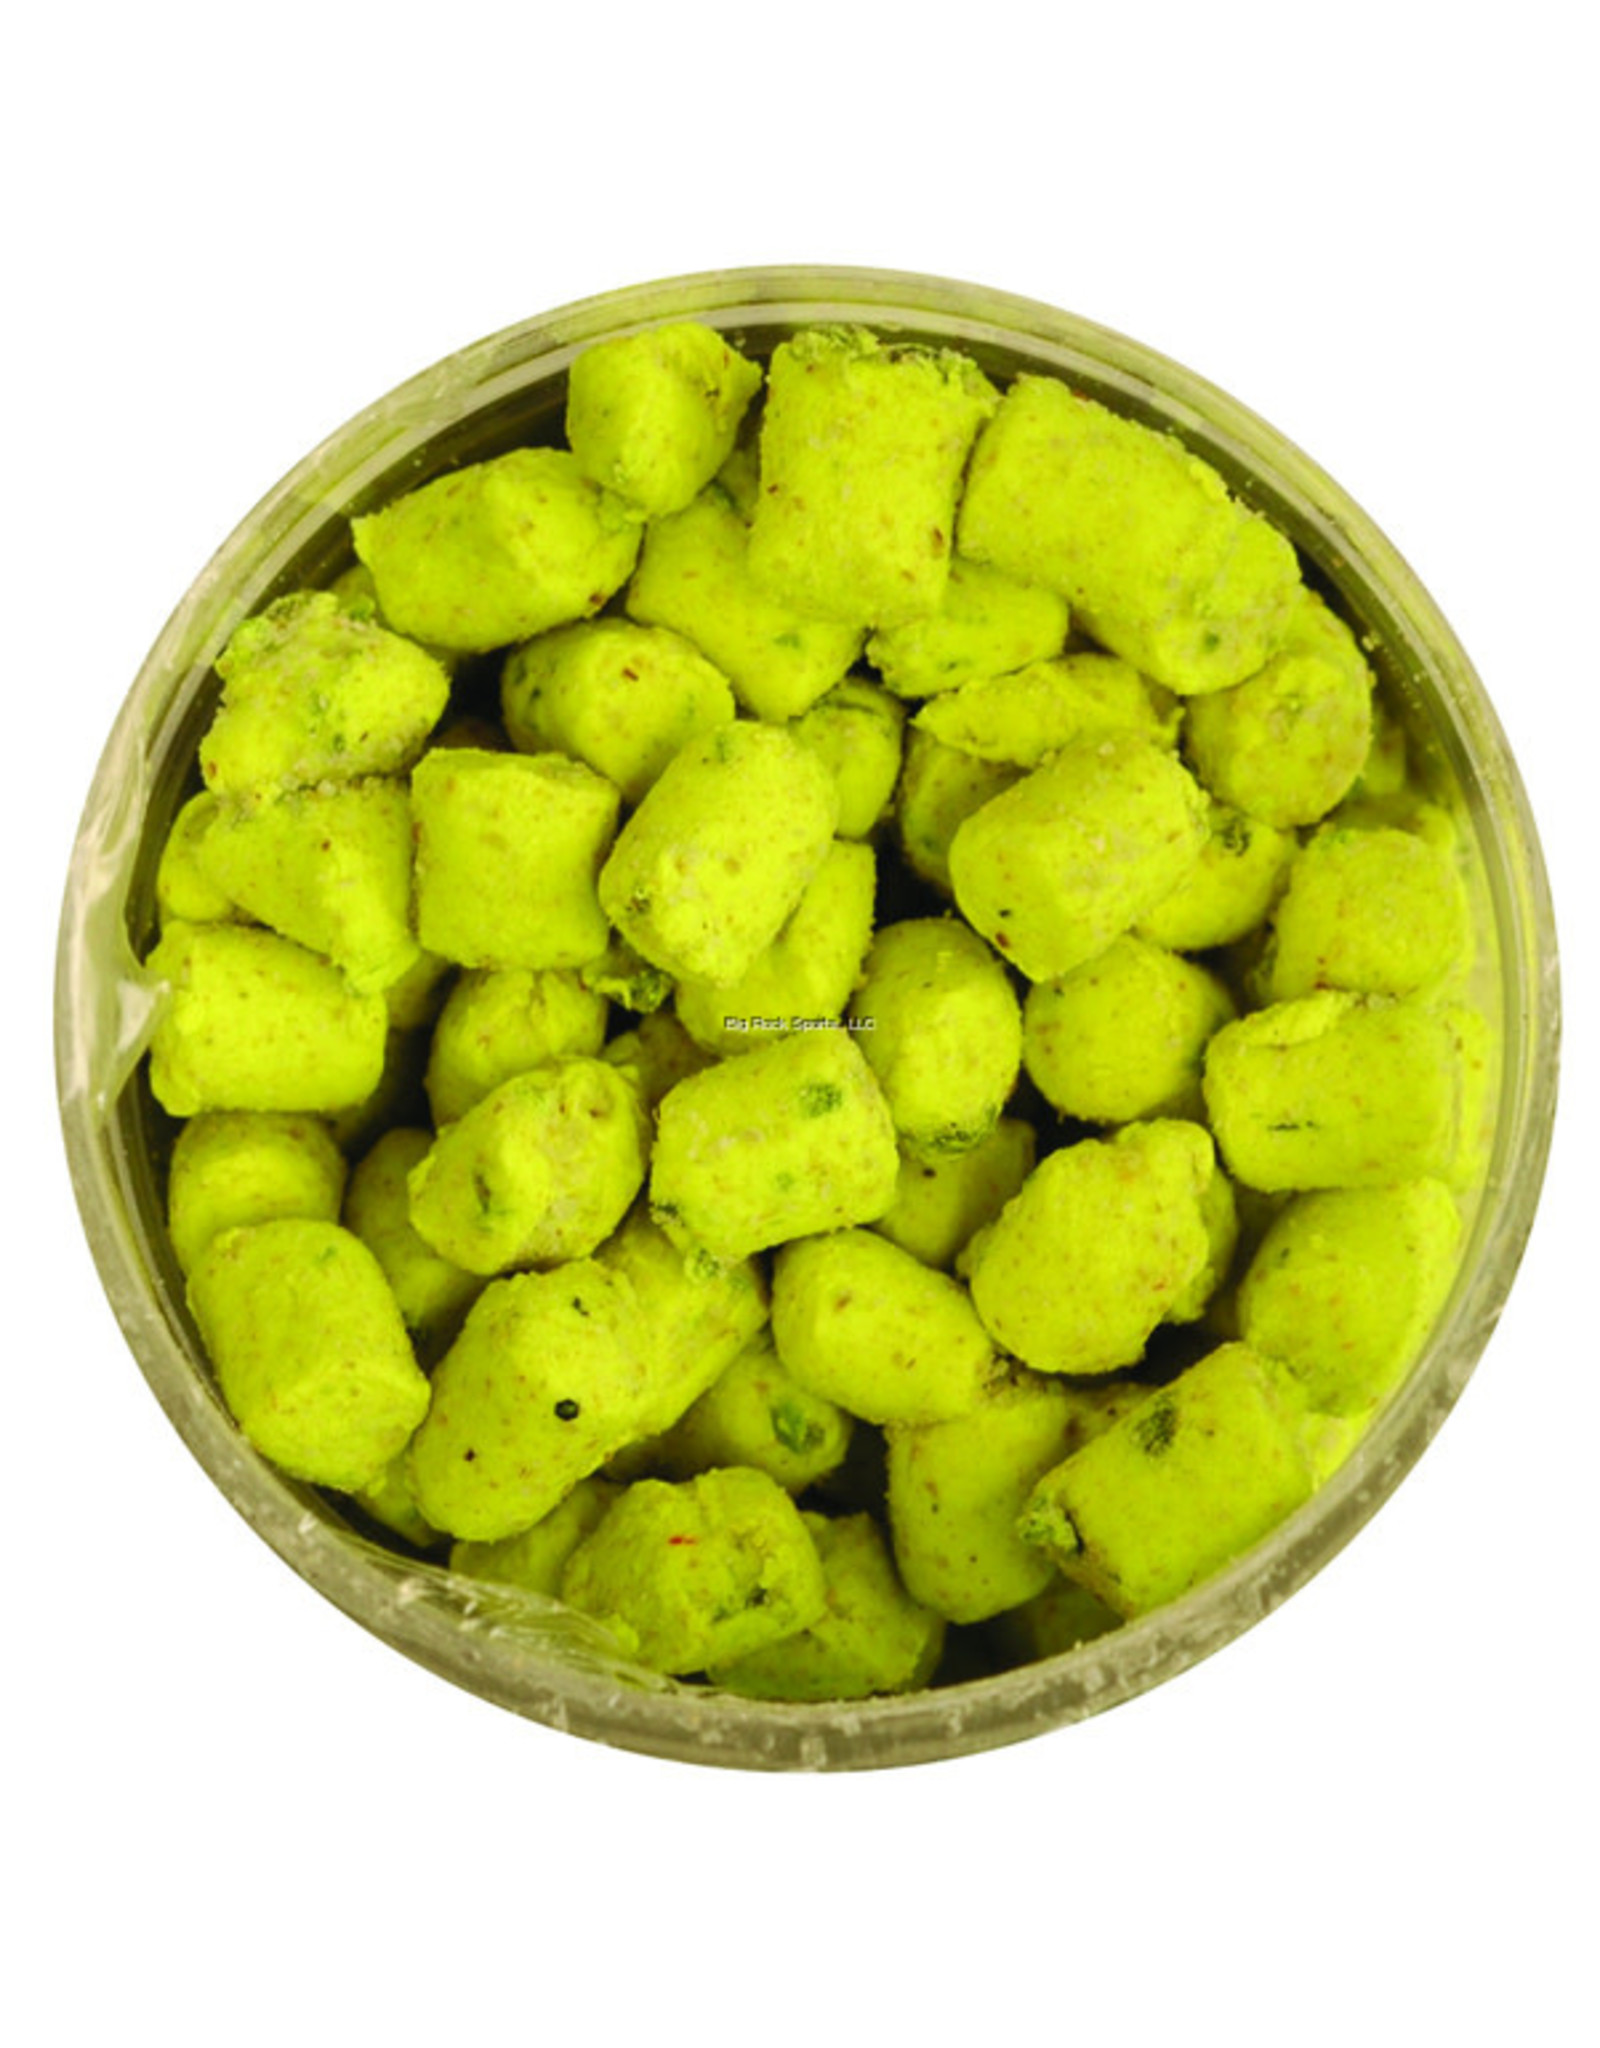 Berkley Berkley GCNB-CH Gulp Crappie Nibbles Chartreuse 1.1oz Jar